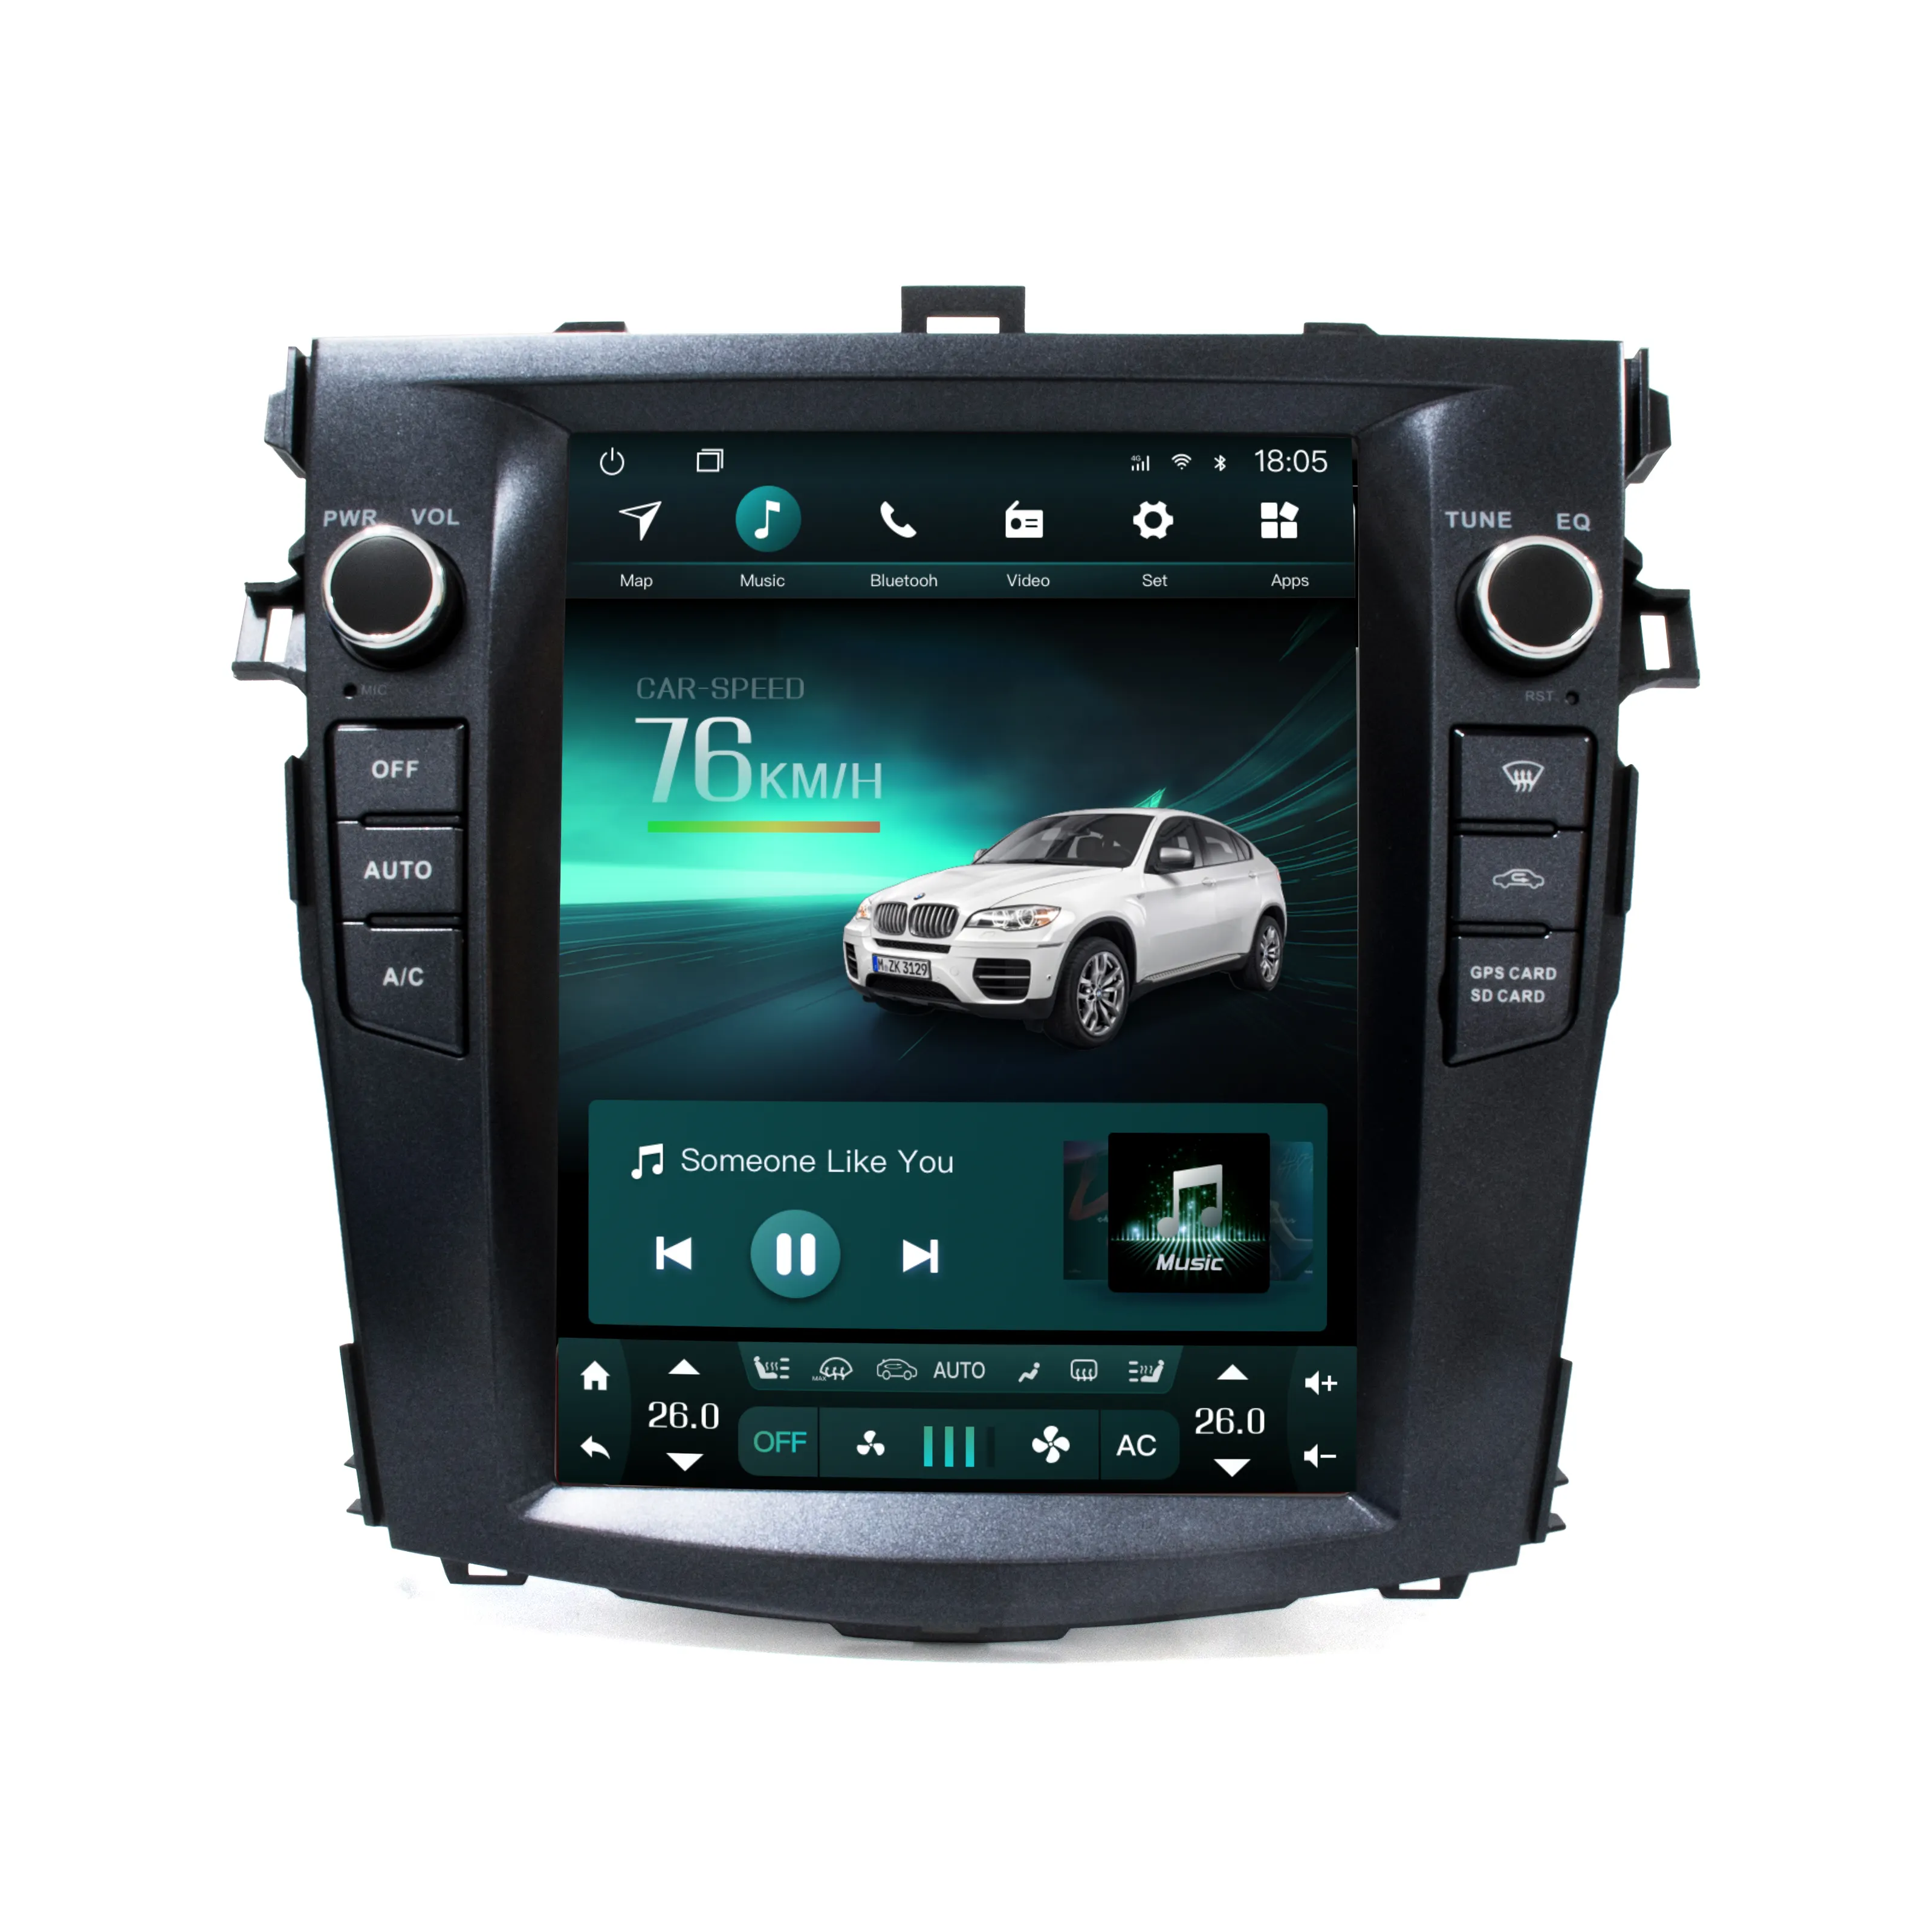 Unité principale avec écran vertical ips entièrement tactile, unité principale de voiture avec audio, DVD et vidéo, de style Tesla, sous android 9.0, pour Toyota corolla 2012